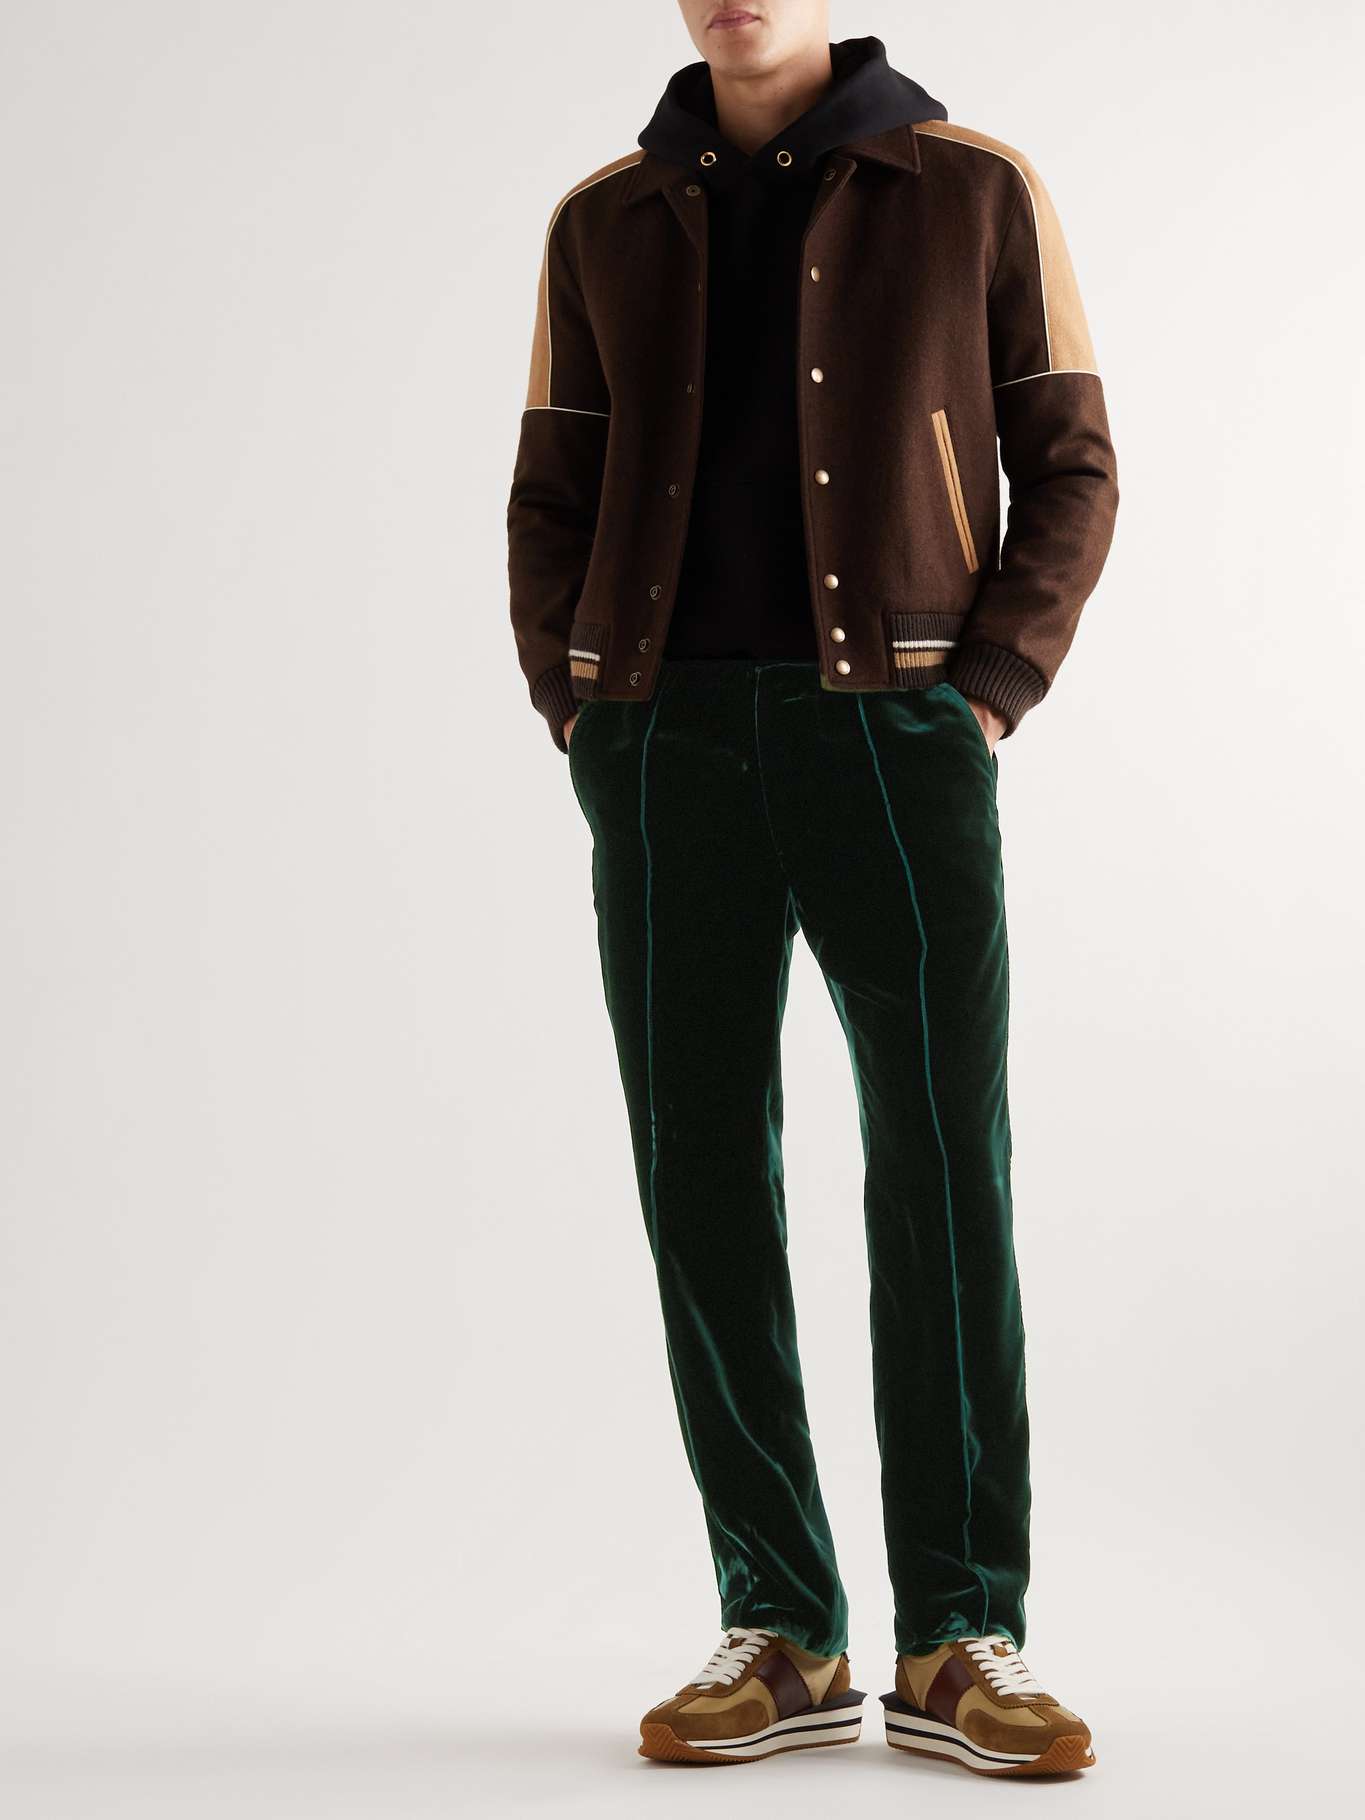 Men's luxury velvet pants from Tom Ford